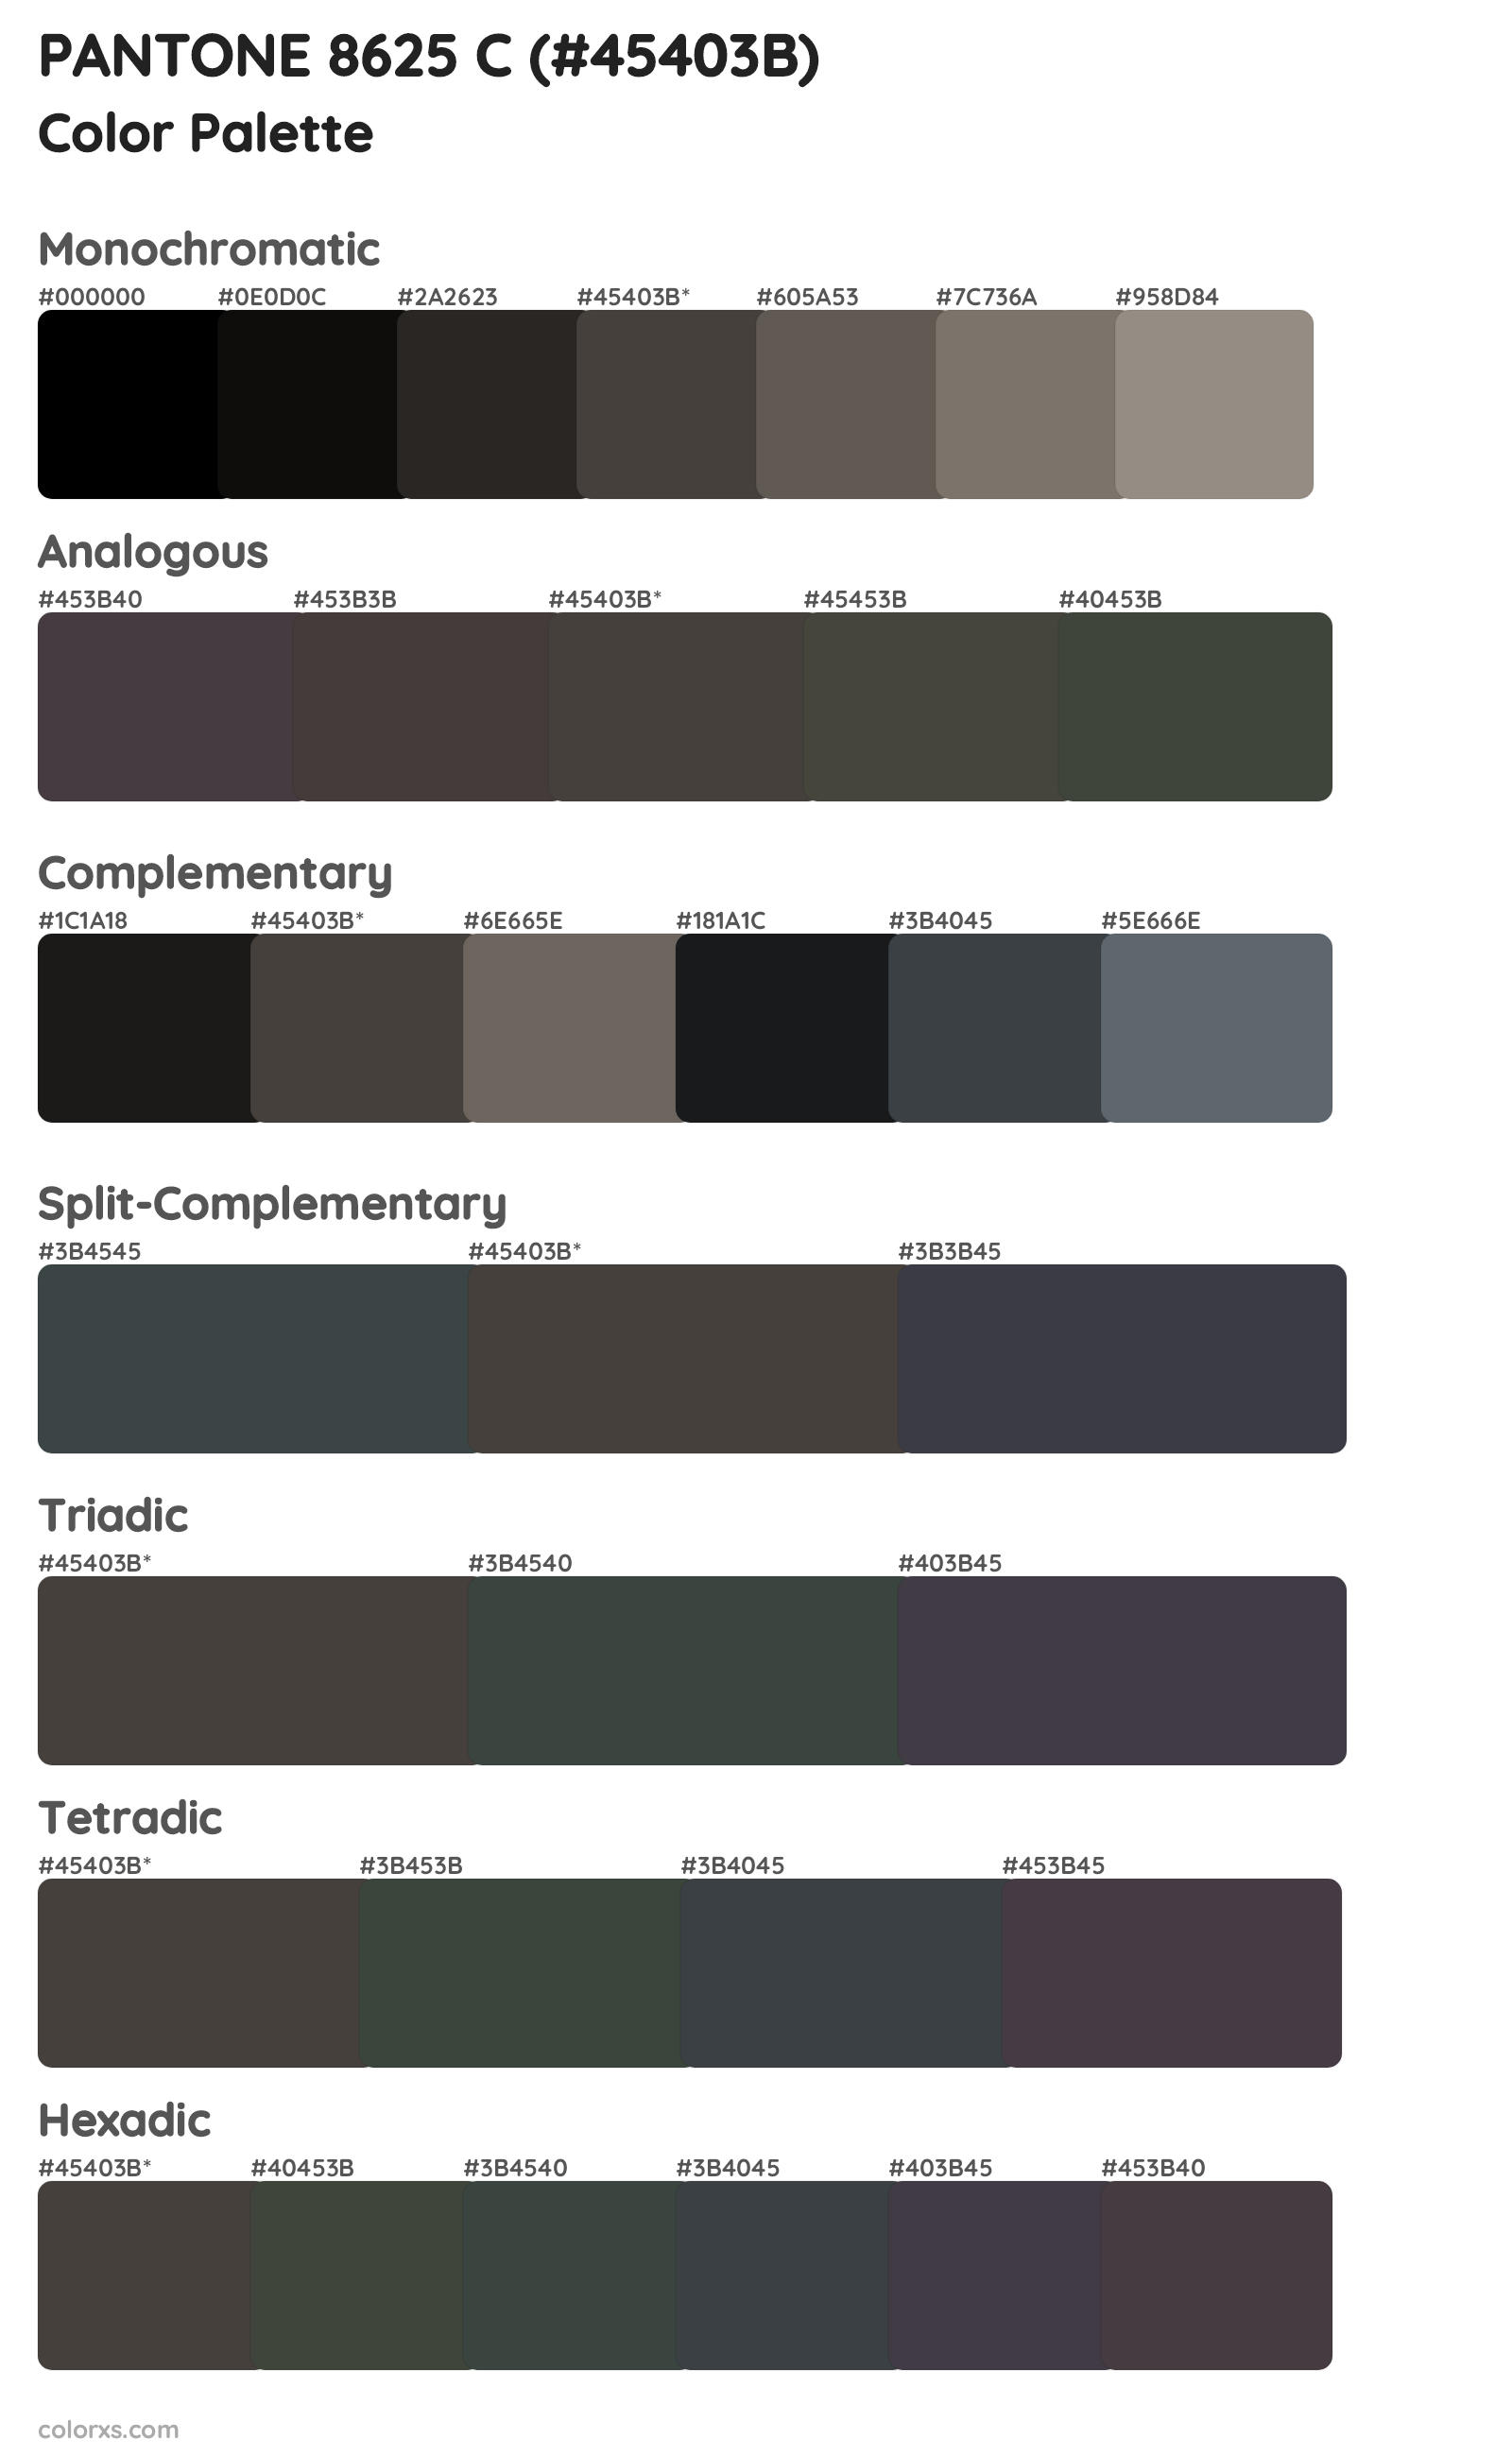 PANTONE 8625 C Color Scheme Palettes